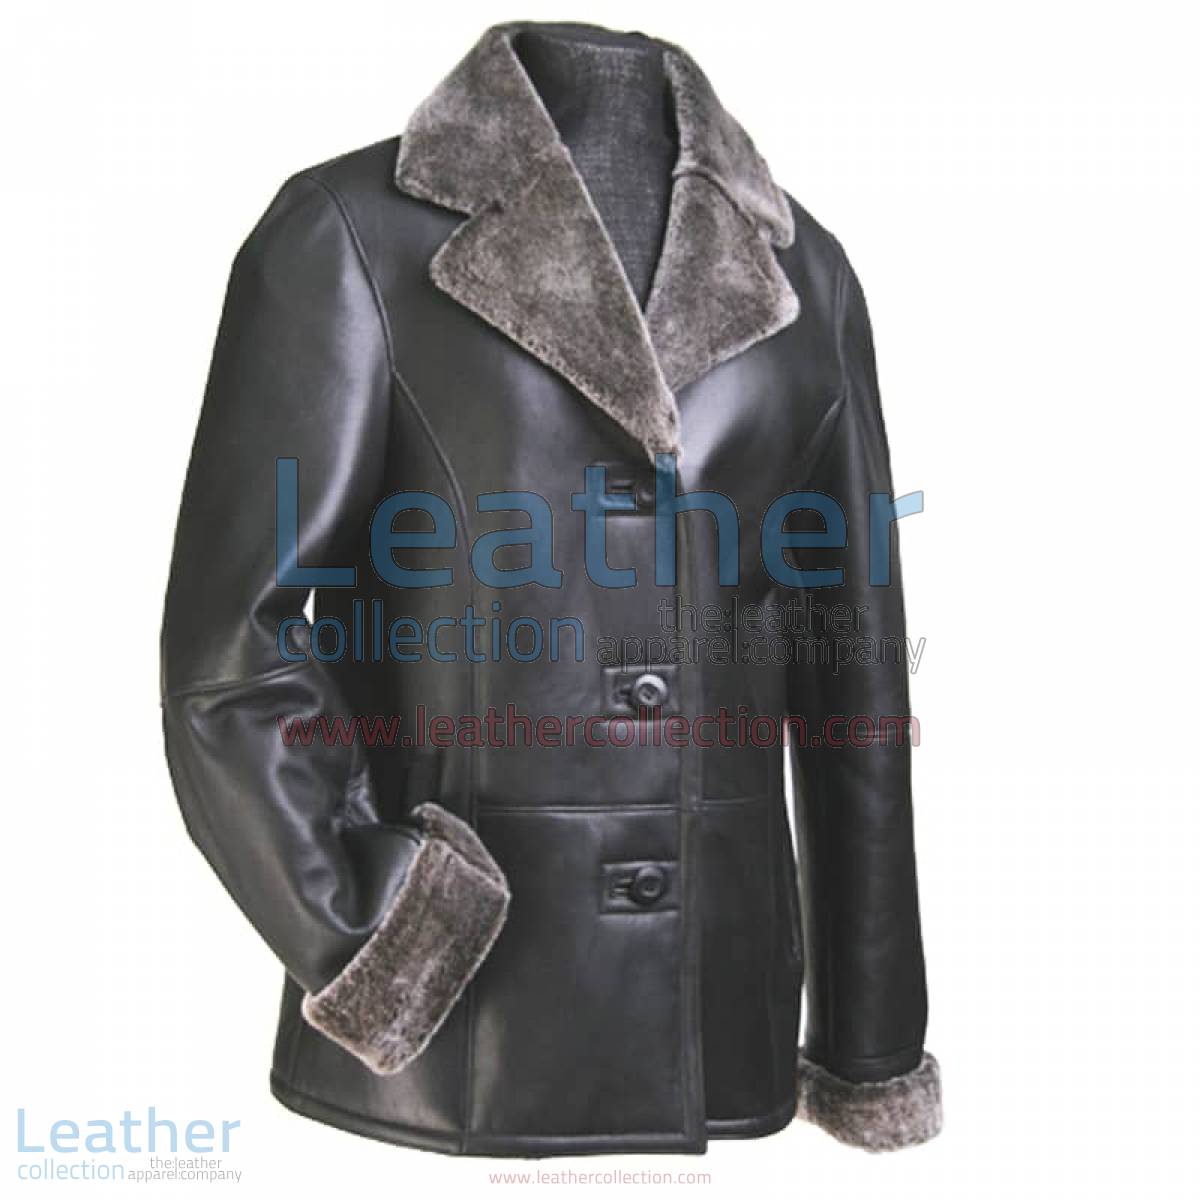 Leather Fur Blazer Women | leather blazer women